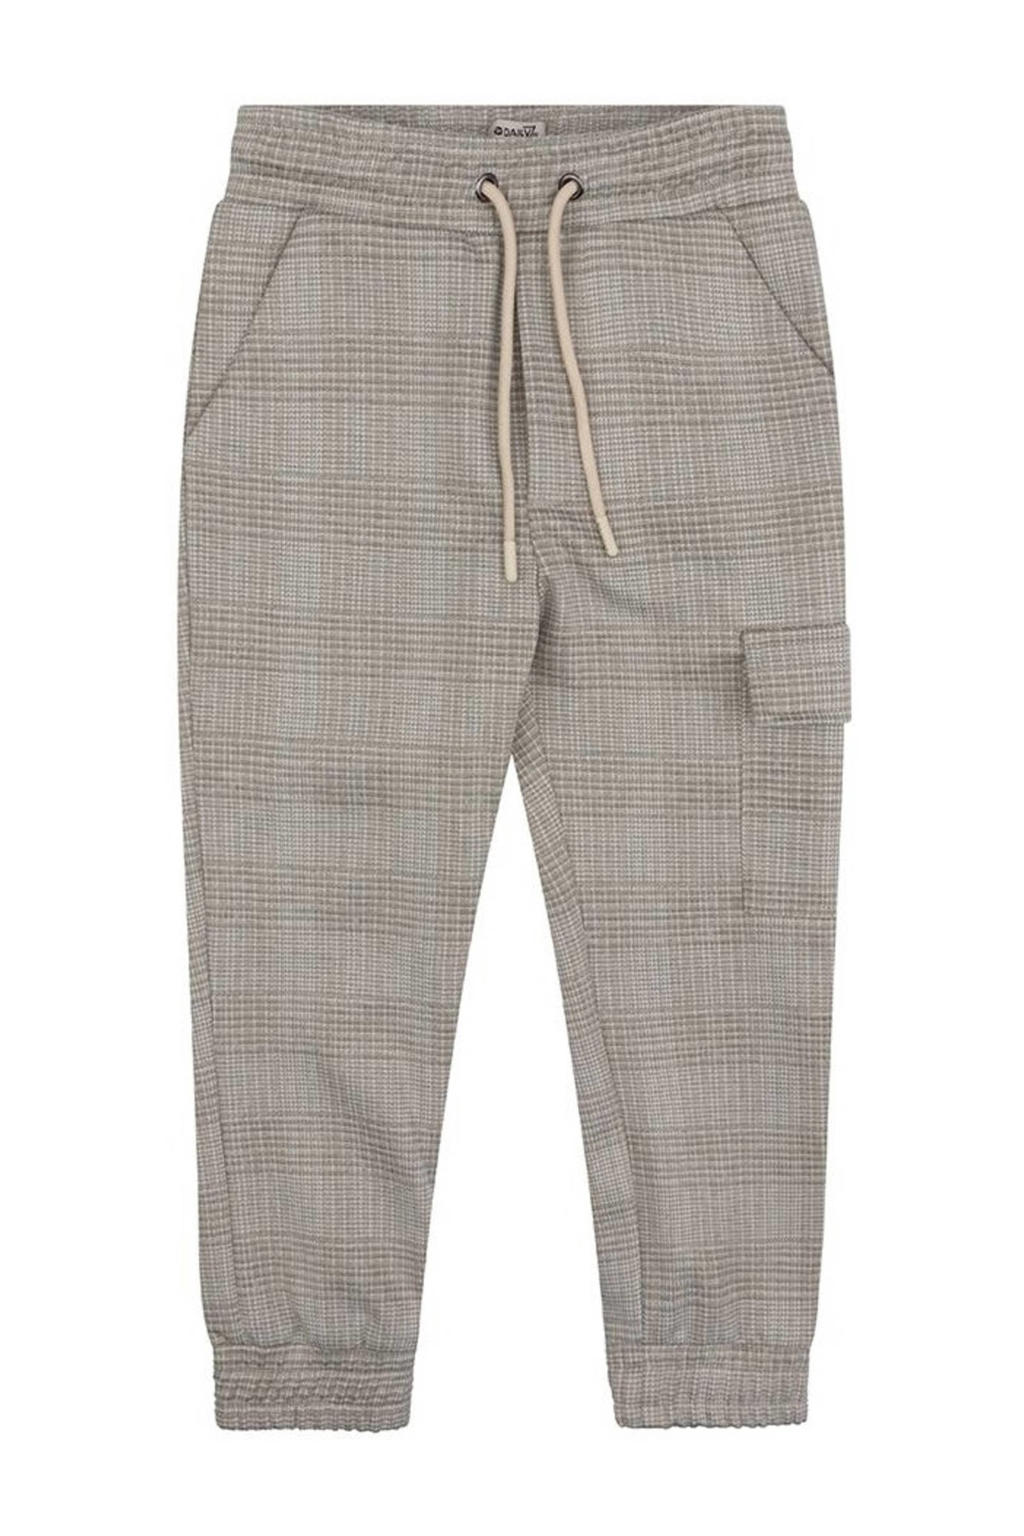 Grijze jongens Daily7 geruite regular fit broek khaki van polyester met elastische tailleband met koord